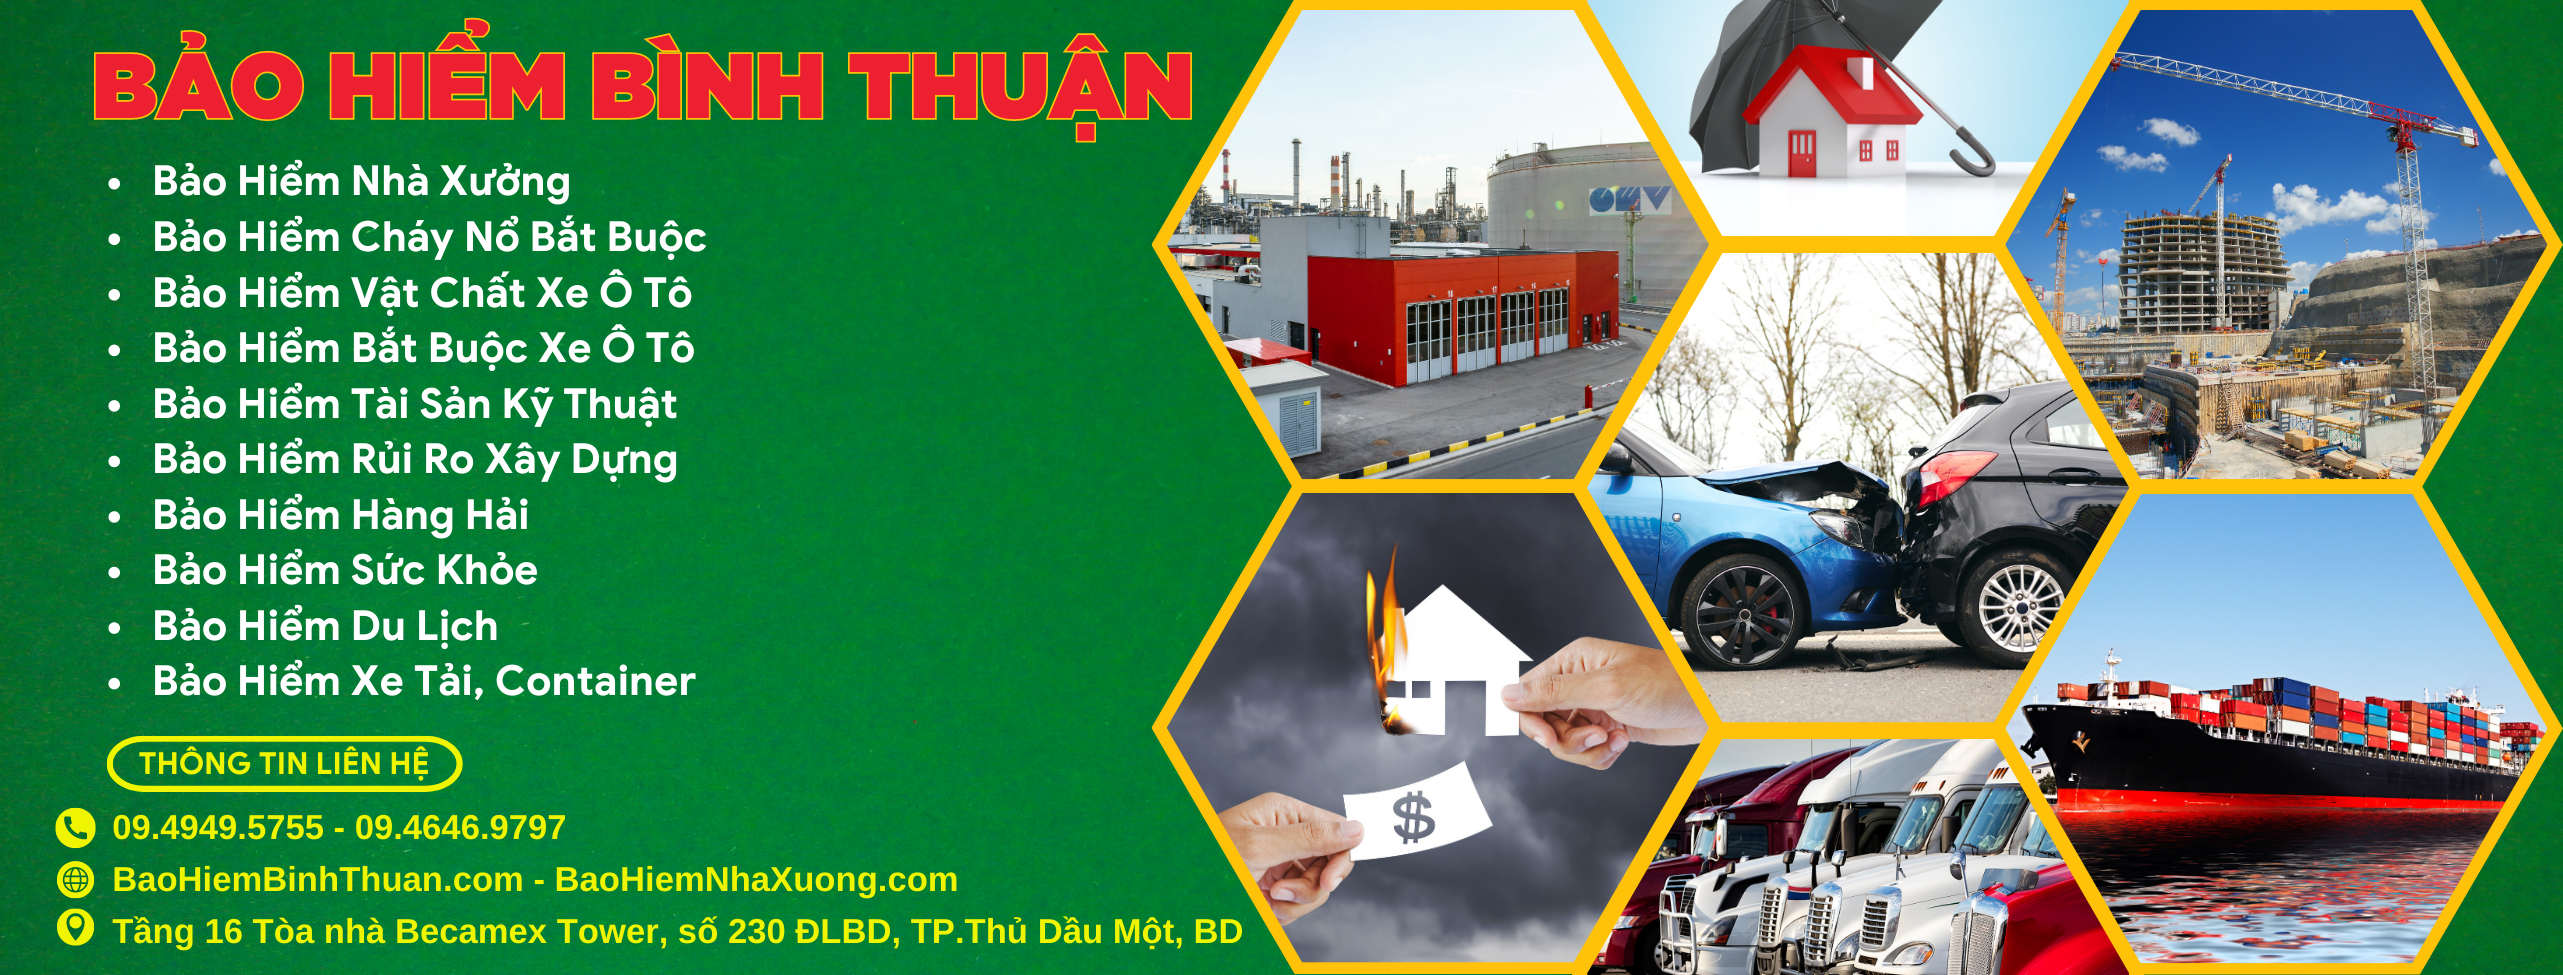 Bảo hiểm Bình Thuận